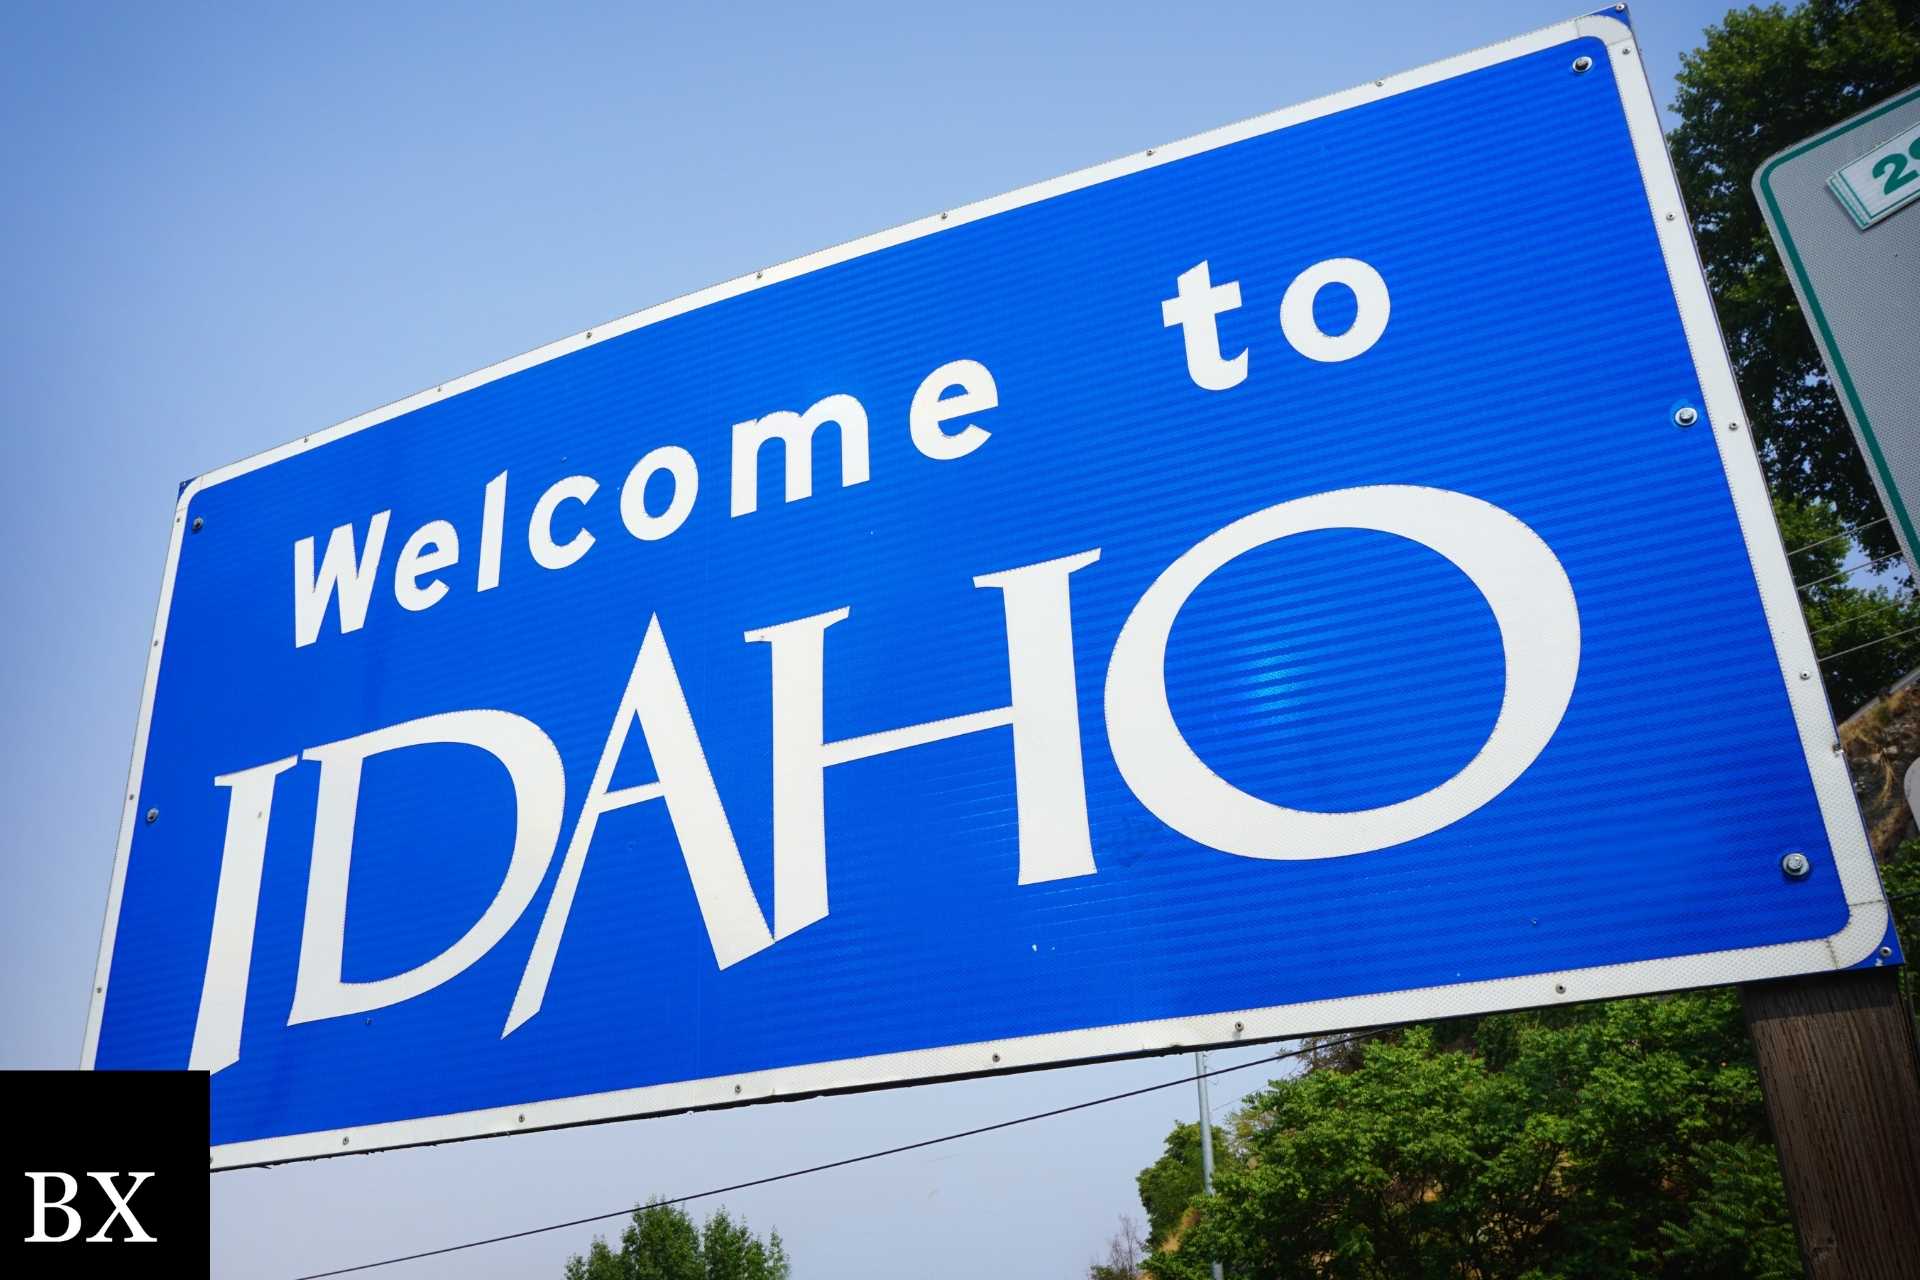 Idaho Plumbing Contractor / Specialty Contractor License Bond